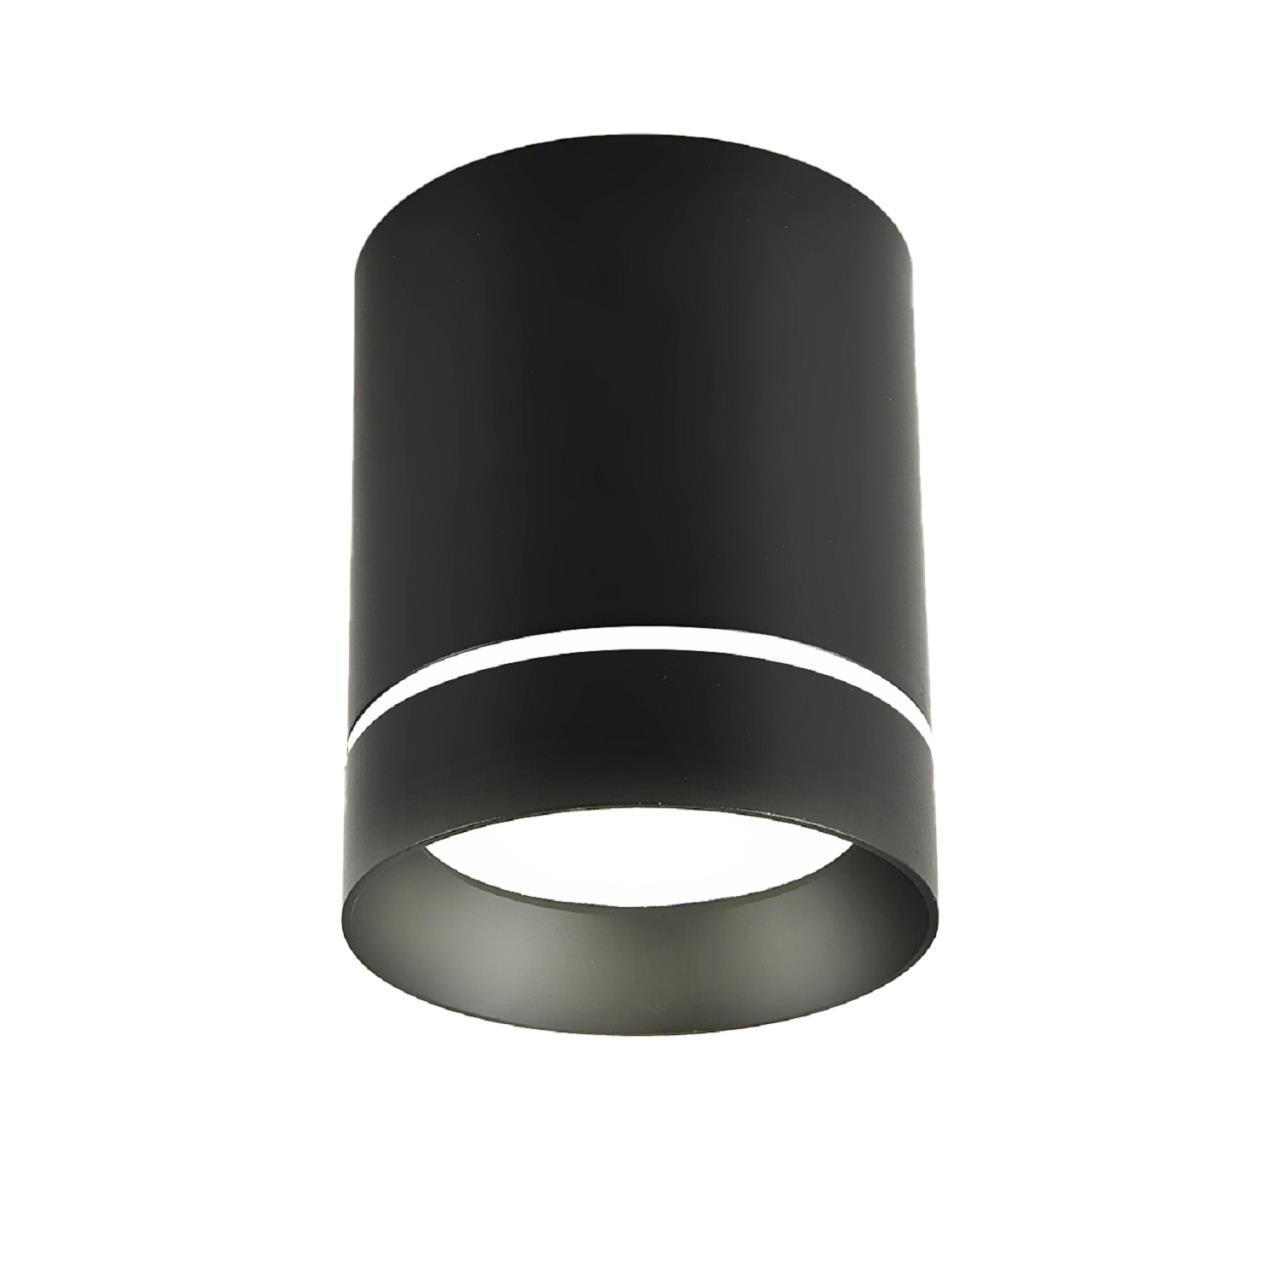 Светильник 8*8 см, GU10 10W, Favourite Darar 3063-1C, D79*H100, Светильник, каркас черного матового цвета, прозрачный декоративный элемент в виде кольца, лампу GU10 можно менять